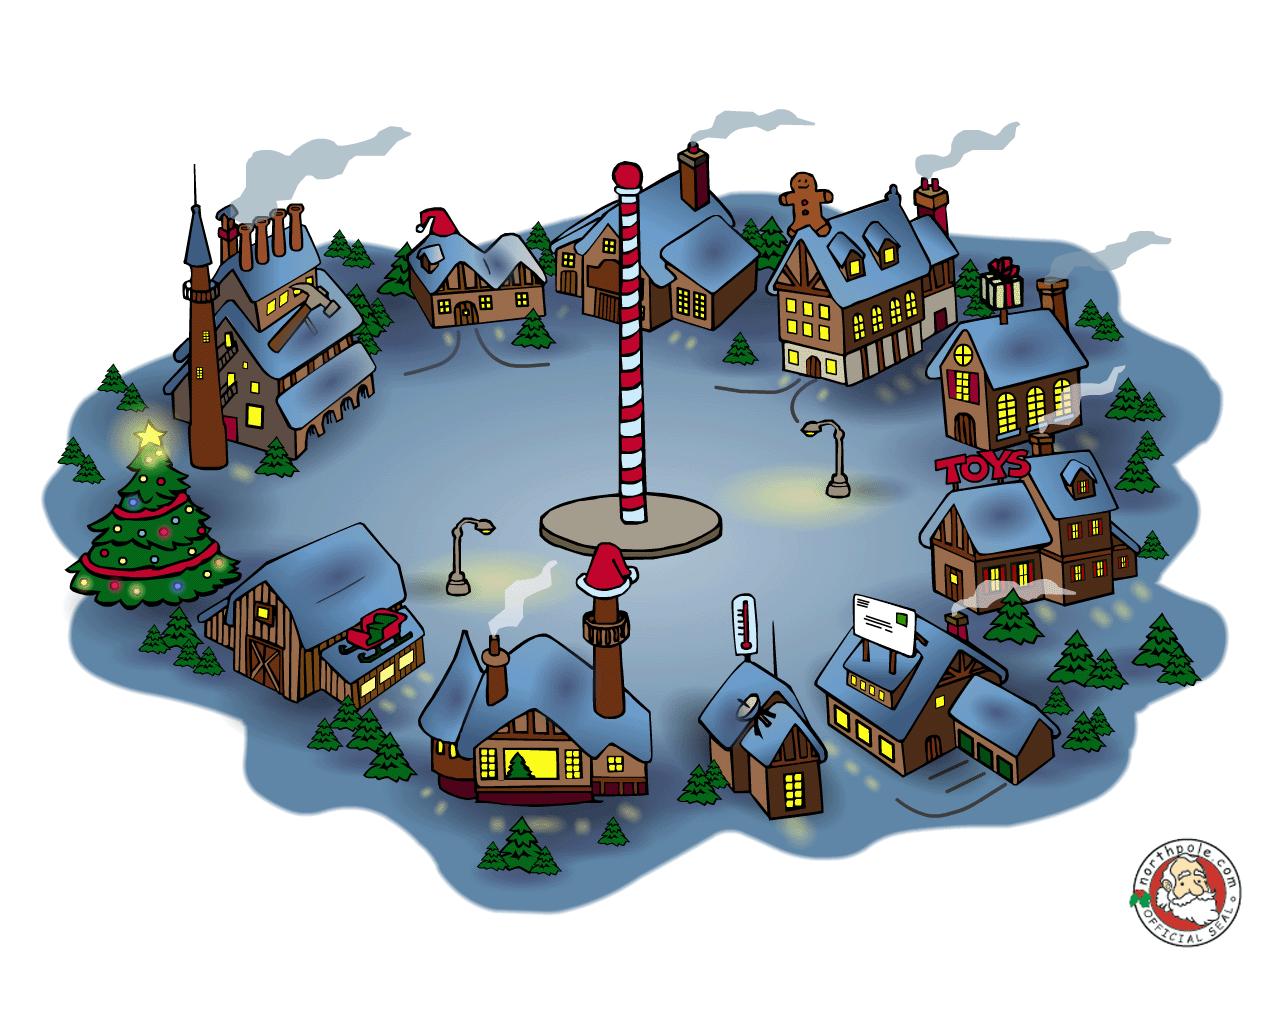 Visit with Santa Claus at Christmas at the North Pole